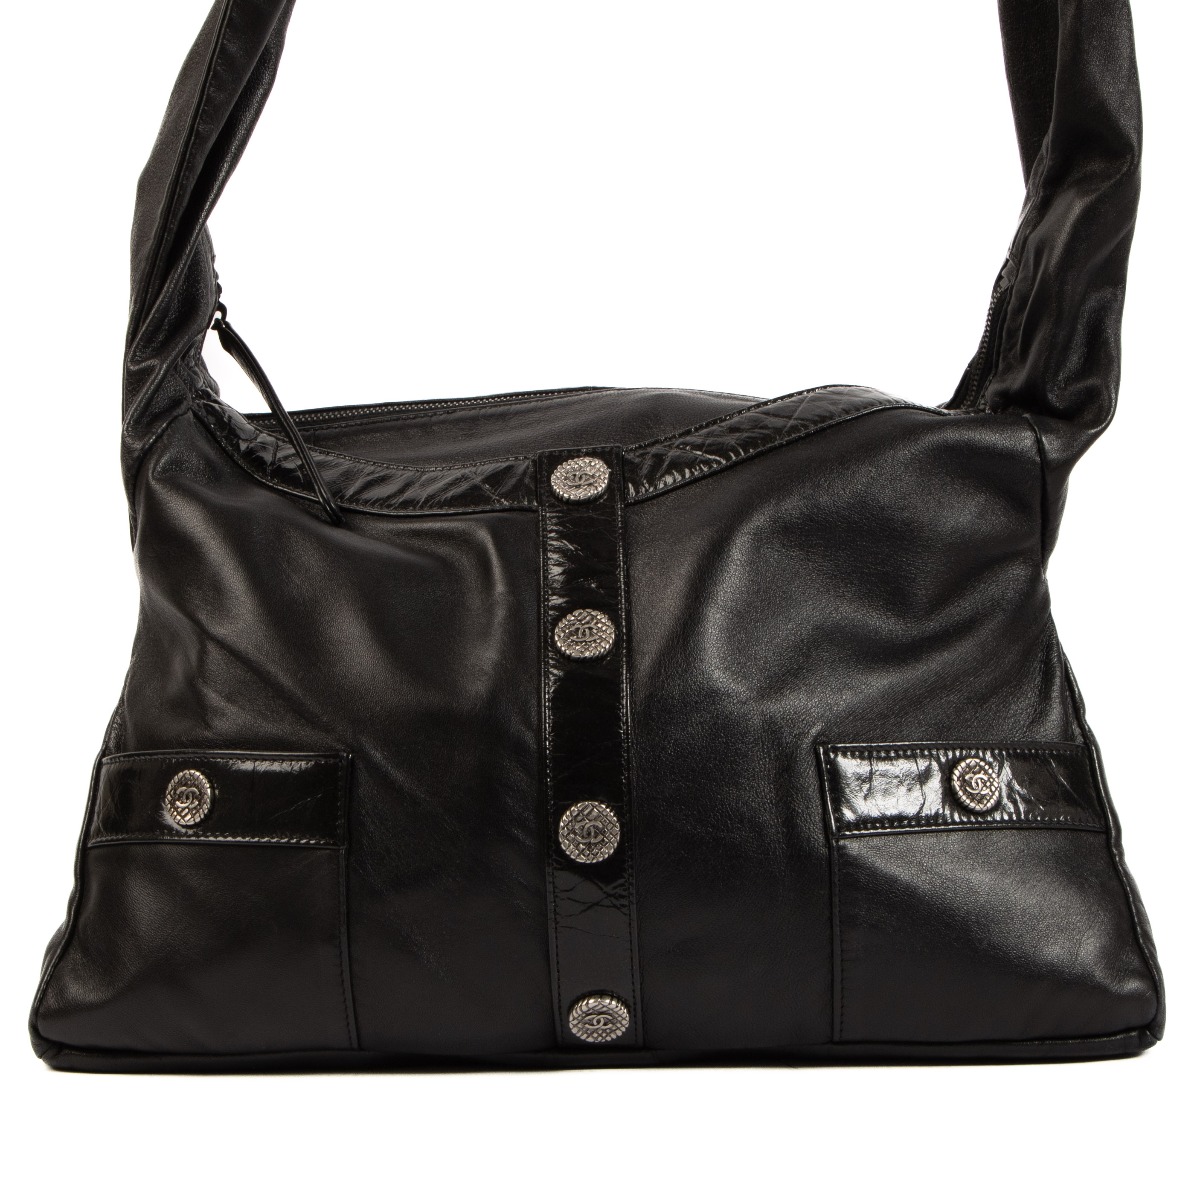 Chanel Girl Chanel Shoulder Bag